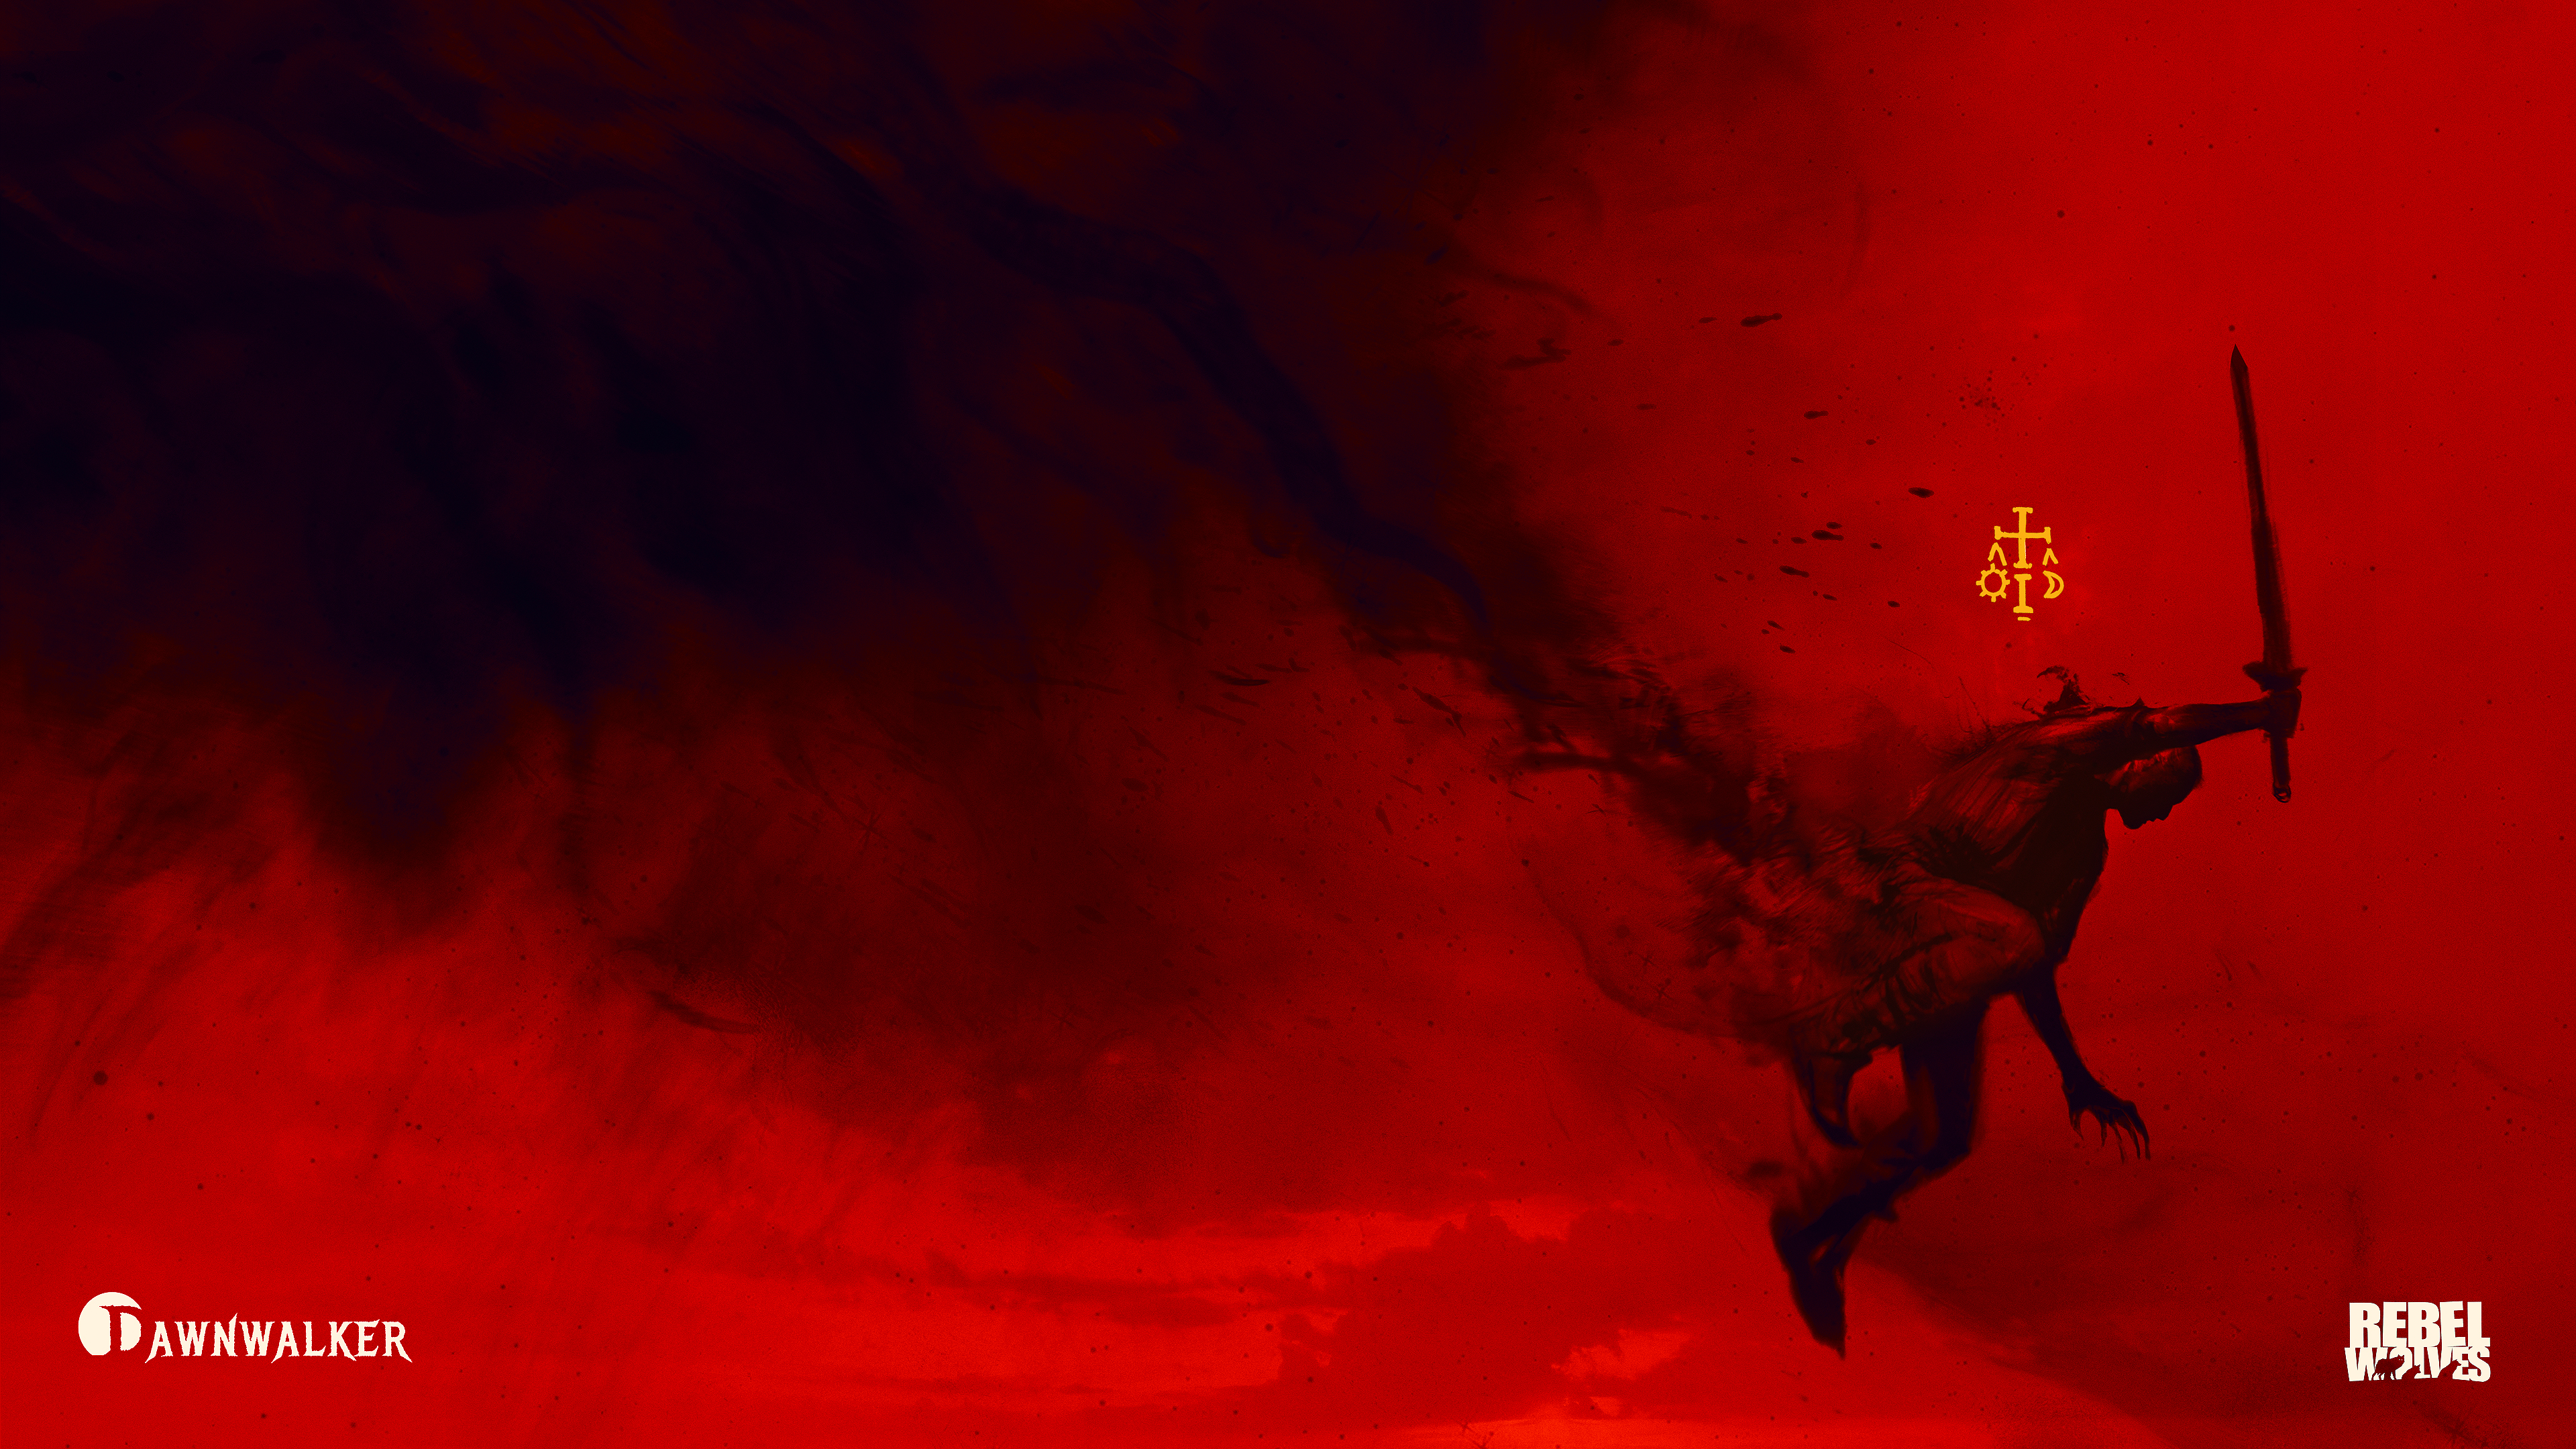 Fondo de pantalla de Dawnwalker: hombre con una espada saltando desde una nube sulfurosa sobre un fondo rojo